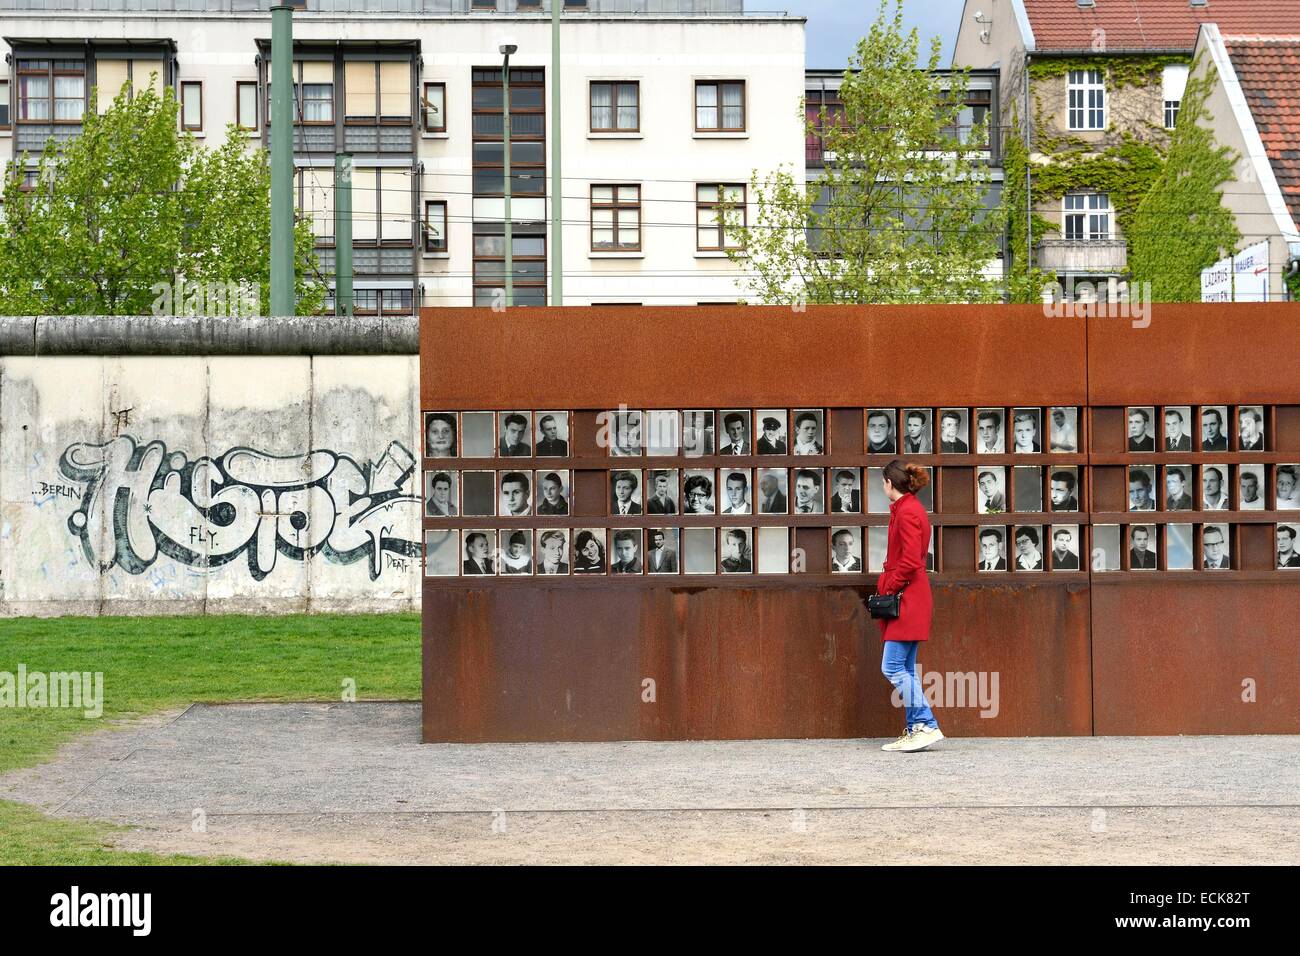 Allemagne, Berlin, Bernauer Strasse, Mémorial du Mur de Berlin (Berliner Mauer) GedenkstΣtte, das Fenster des Gedenkens (fenêtre du souvenir) où les victimes du Mur sont honorés avec leur nom et une photo-portrait Banque D'Images